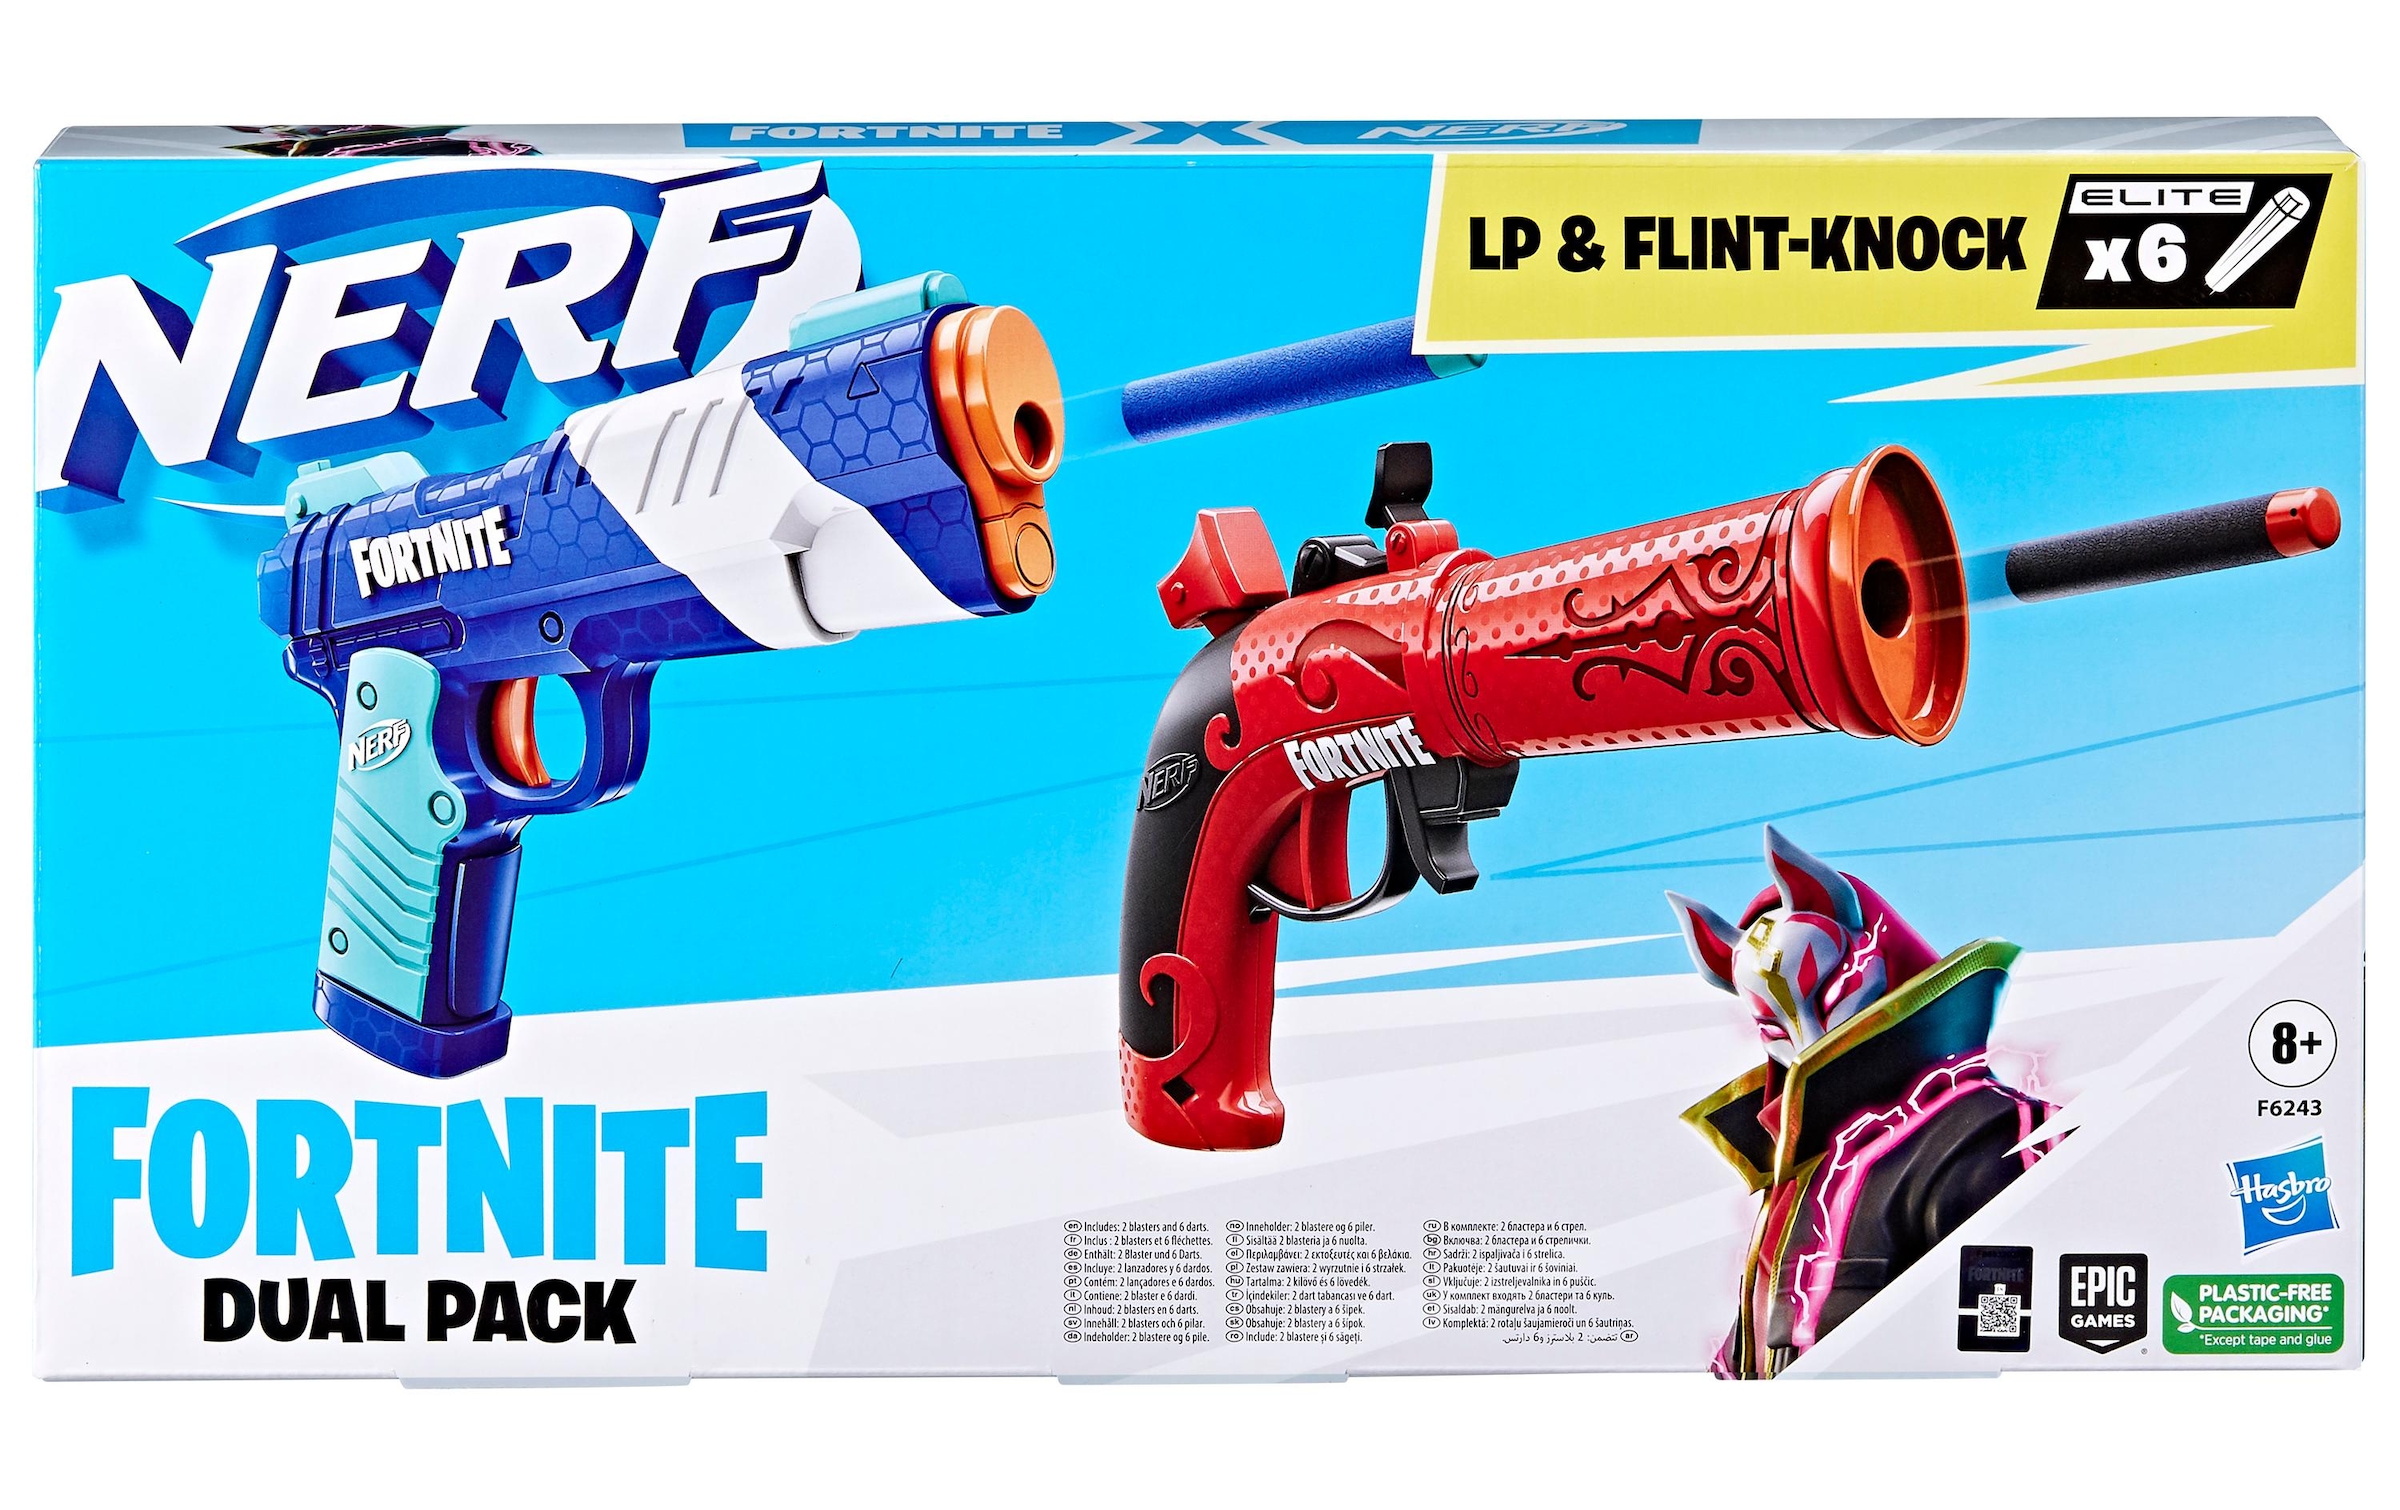 Nerf Blaster »Fortnite LP & Flint-Knock«